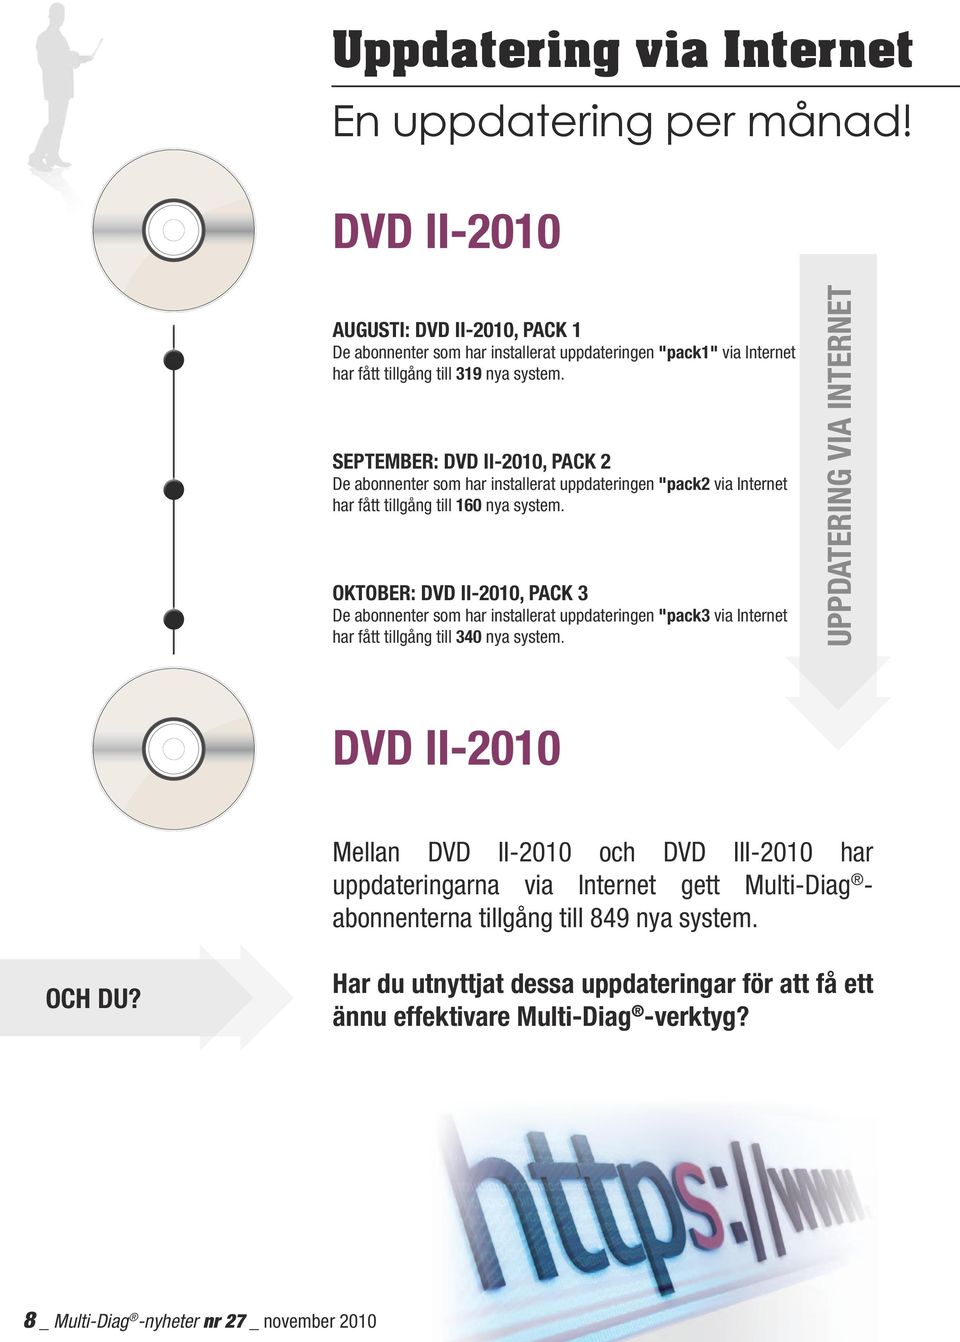 September: dvd II-2010, pack 2 De abonnenter som har installerat uppdateringen "pack2 via Internet har fått tillgång till 160 nya system.